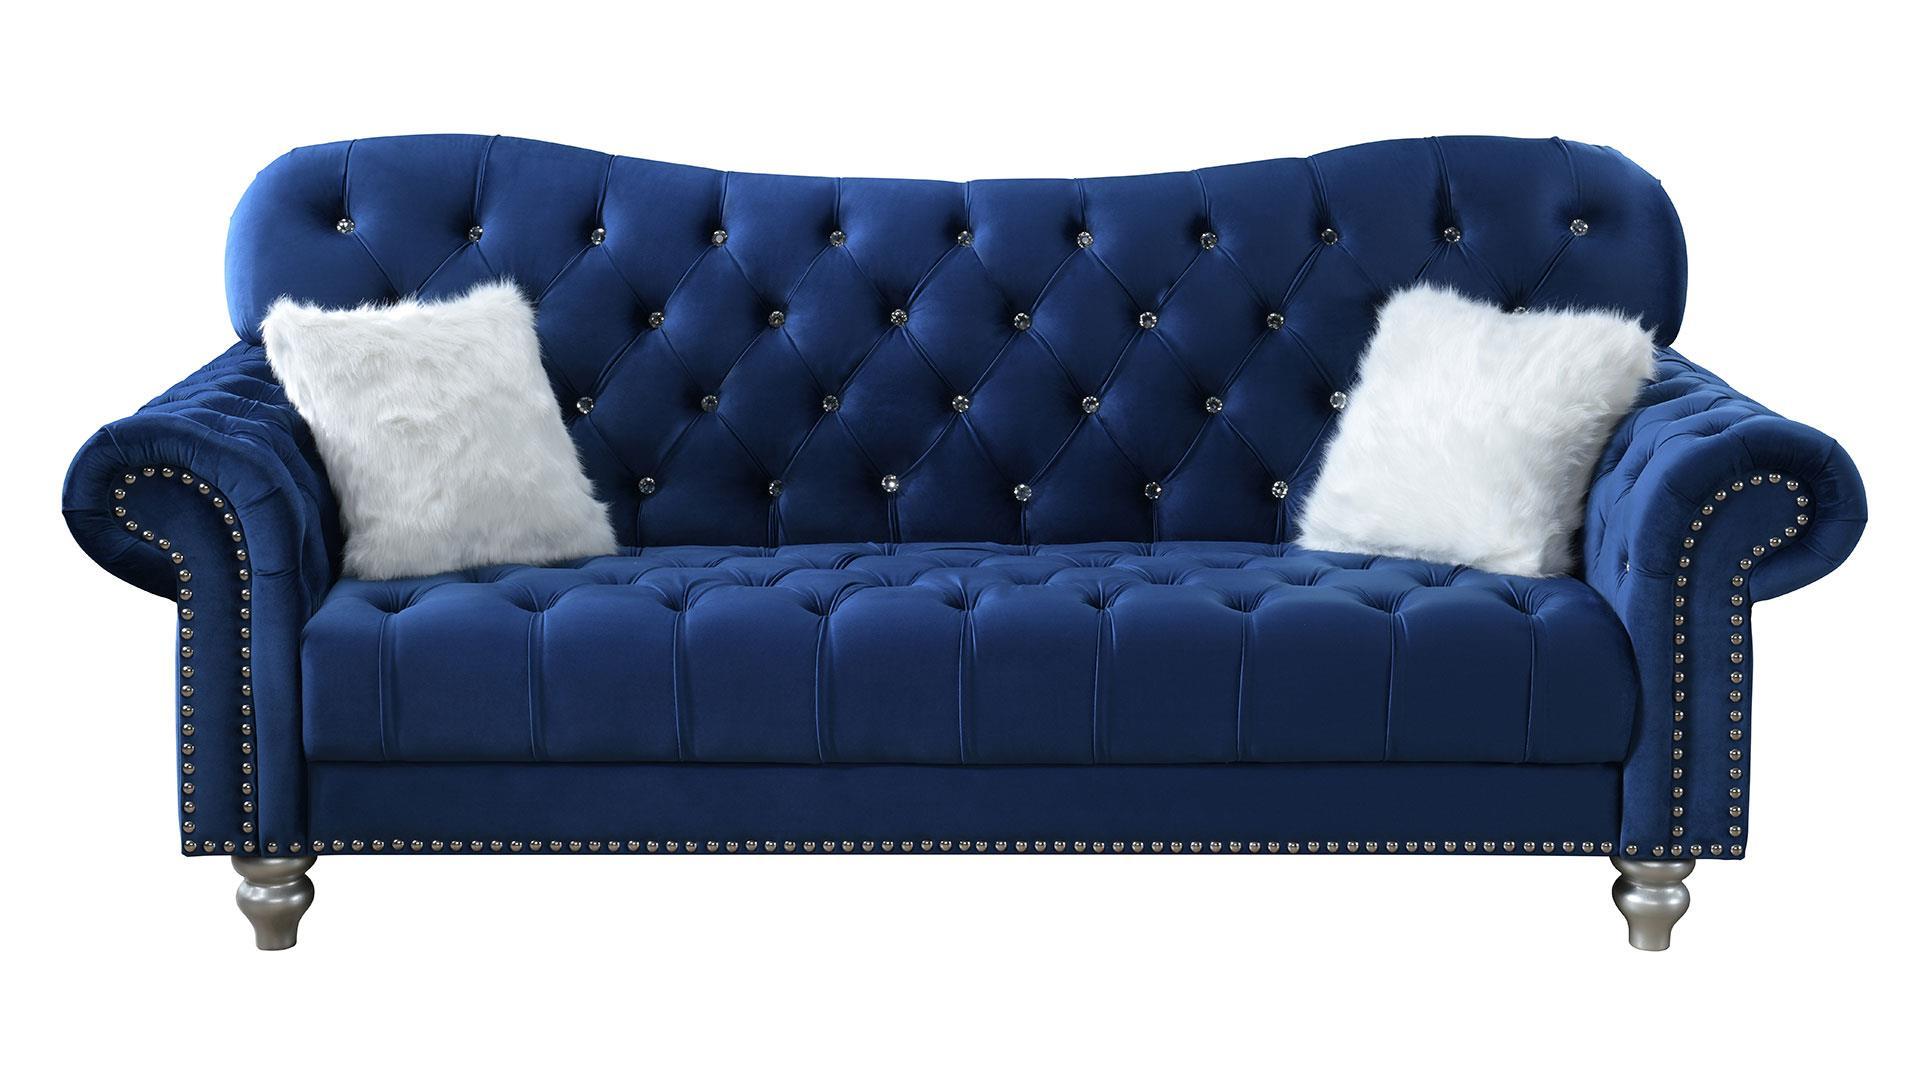 

    
U4422 Navy Blue Velvet Vintage-inspired Sofa Global USA
